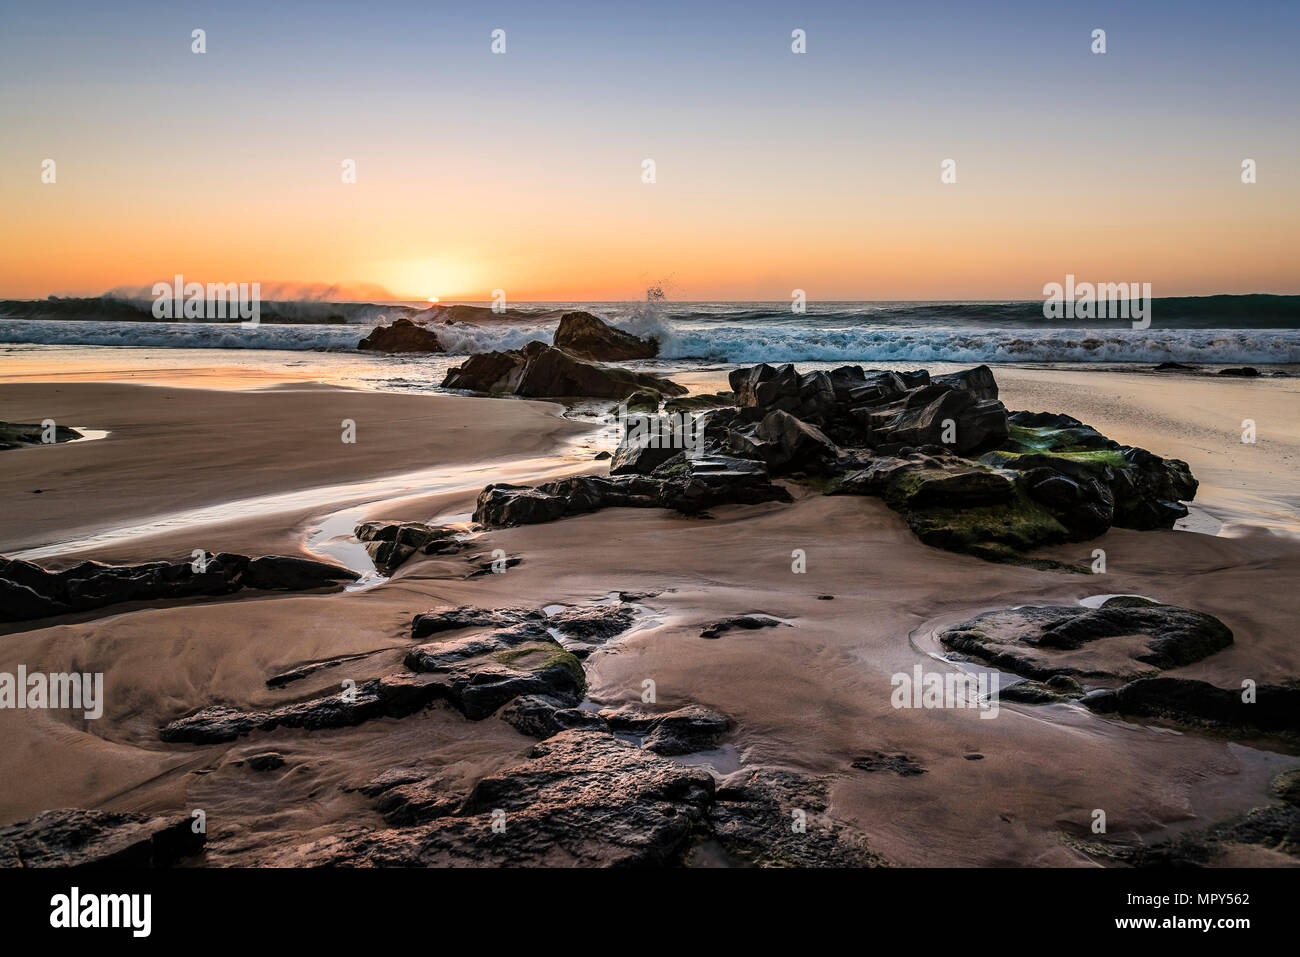 Vue idyllique sur la mer avec plage de rochers à contre ciel dramatique pendant le coucher du soleil Banque D'Images